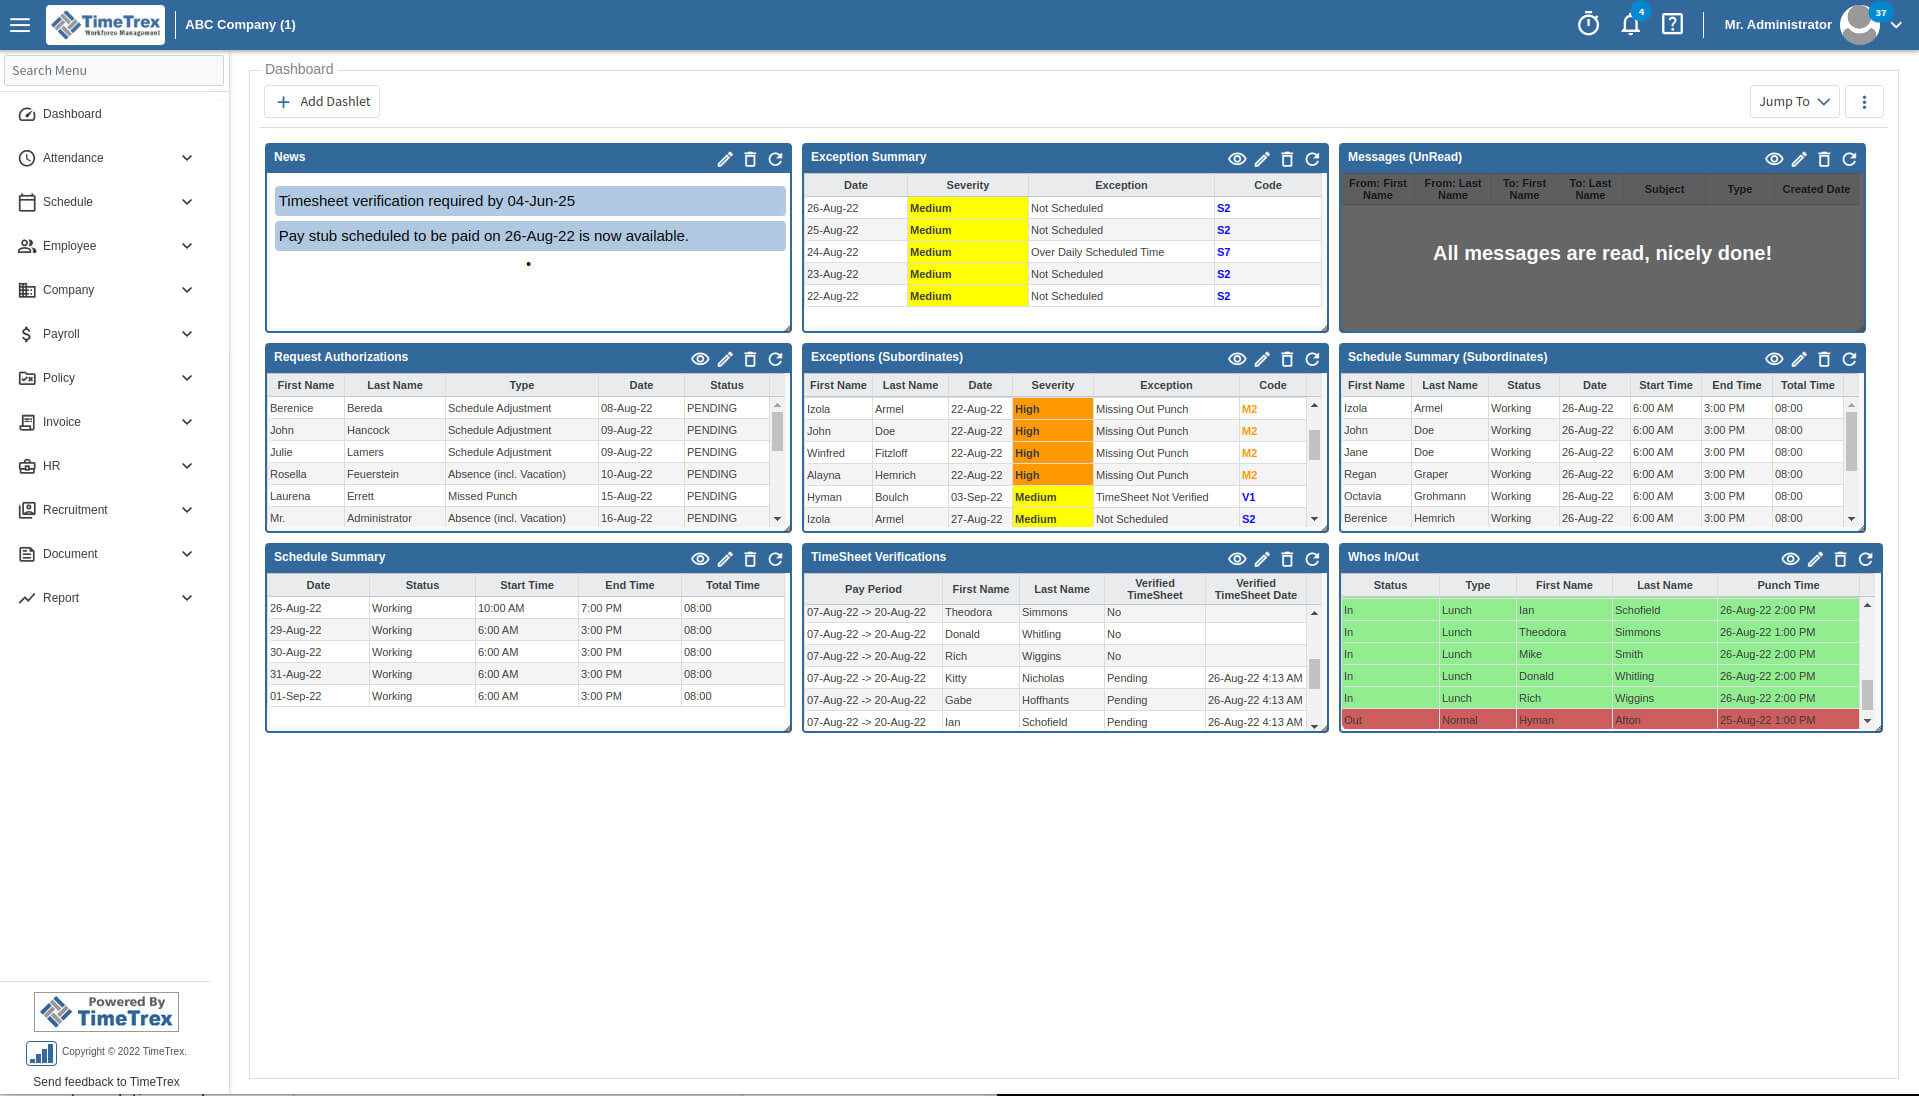 TimeTrex - Enterprise Edition Screenshot (8)